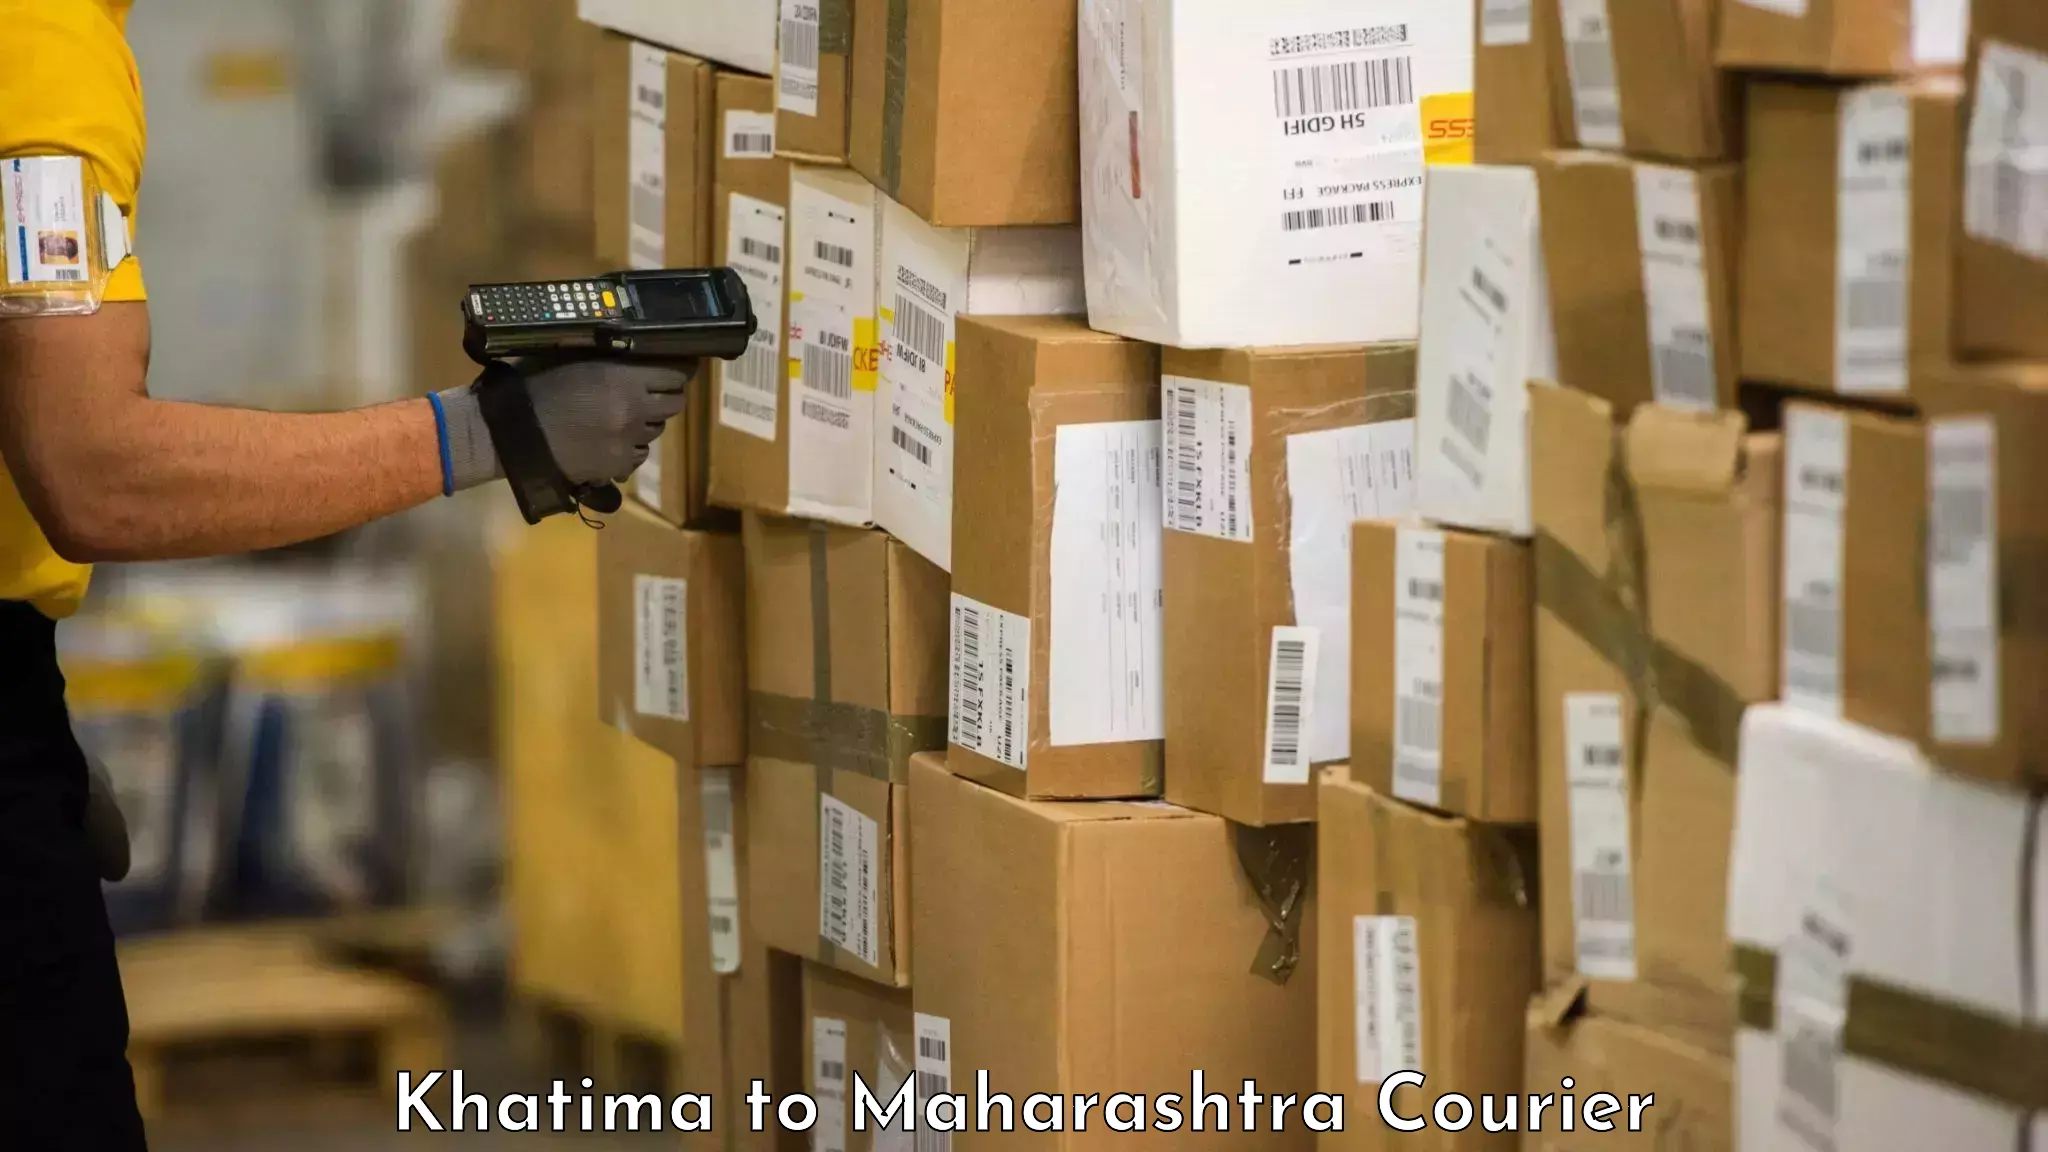 Luggage transport schedule Khatima to Tata Institute of Social Sciences Mumbai